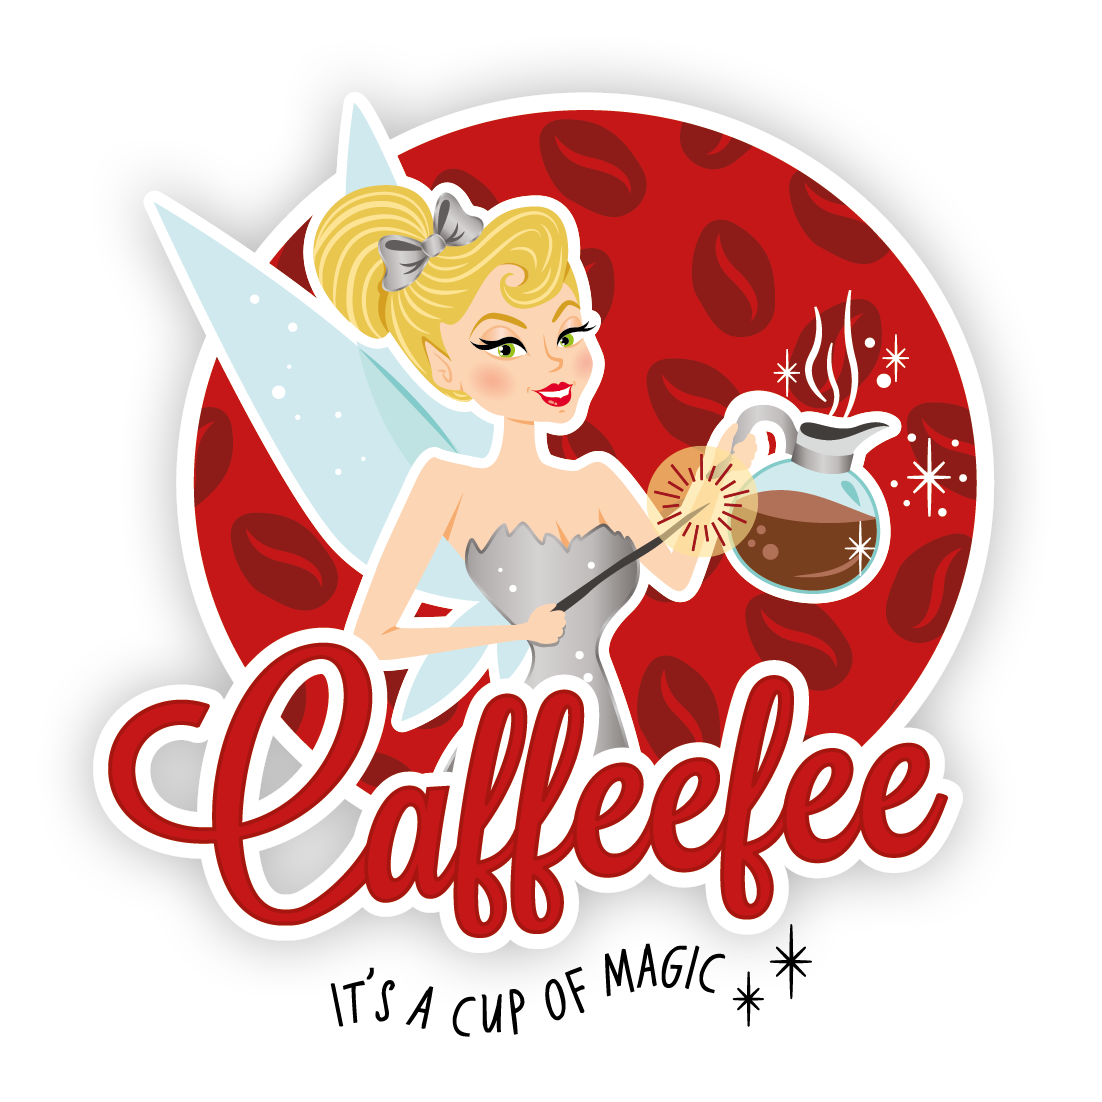 Das Logo von Caffeefee: Eine blonde Fee mit Flügeln und silbernem Kleid. In der linken Hand hält sie eine Kaffeekanne, in der rechten einen Zauberstab. Um sie herum ist ein roter Kreis mit Kaffeebohnenmuster. Darunter steht: Caffeefee und It's a Cup of Magic.